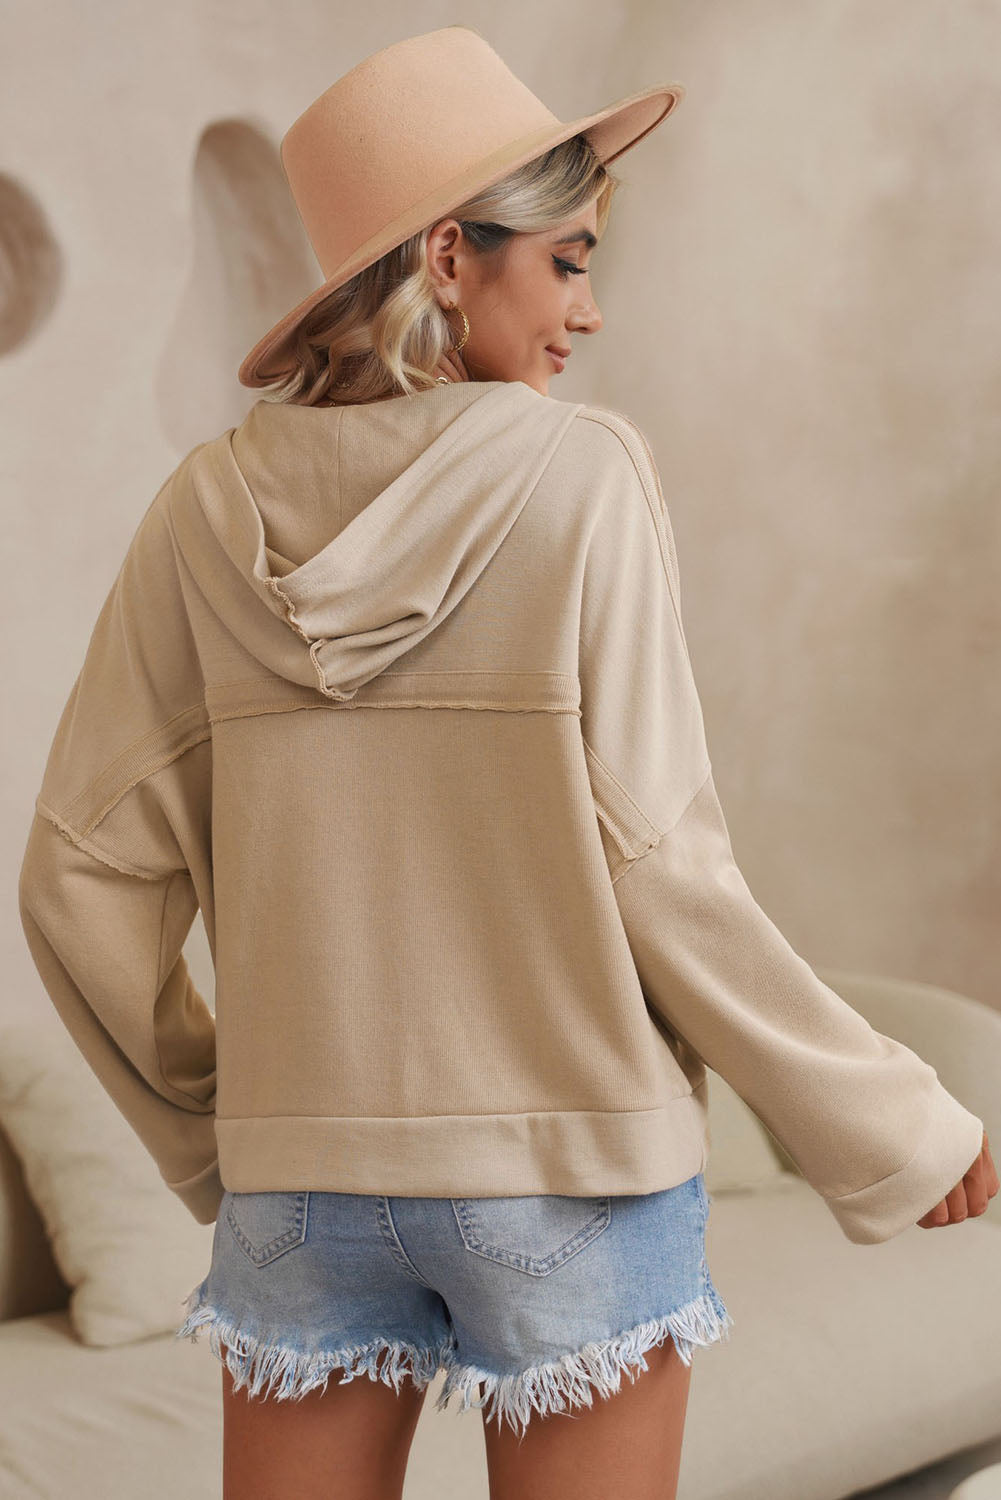 Casual Drop-Shoulder hoodies for women